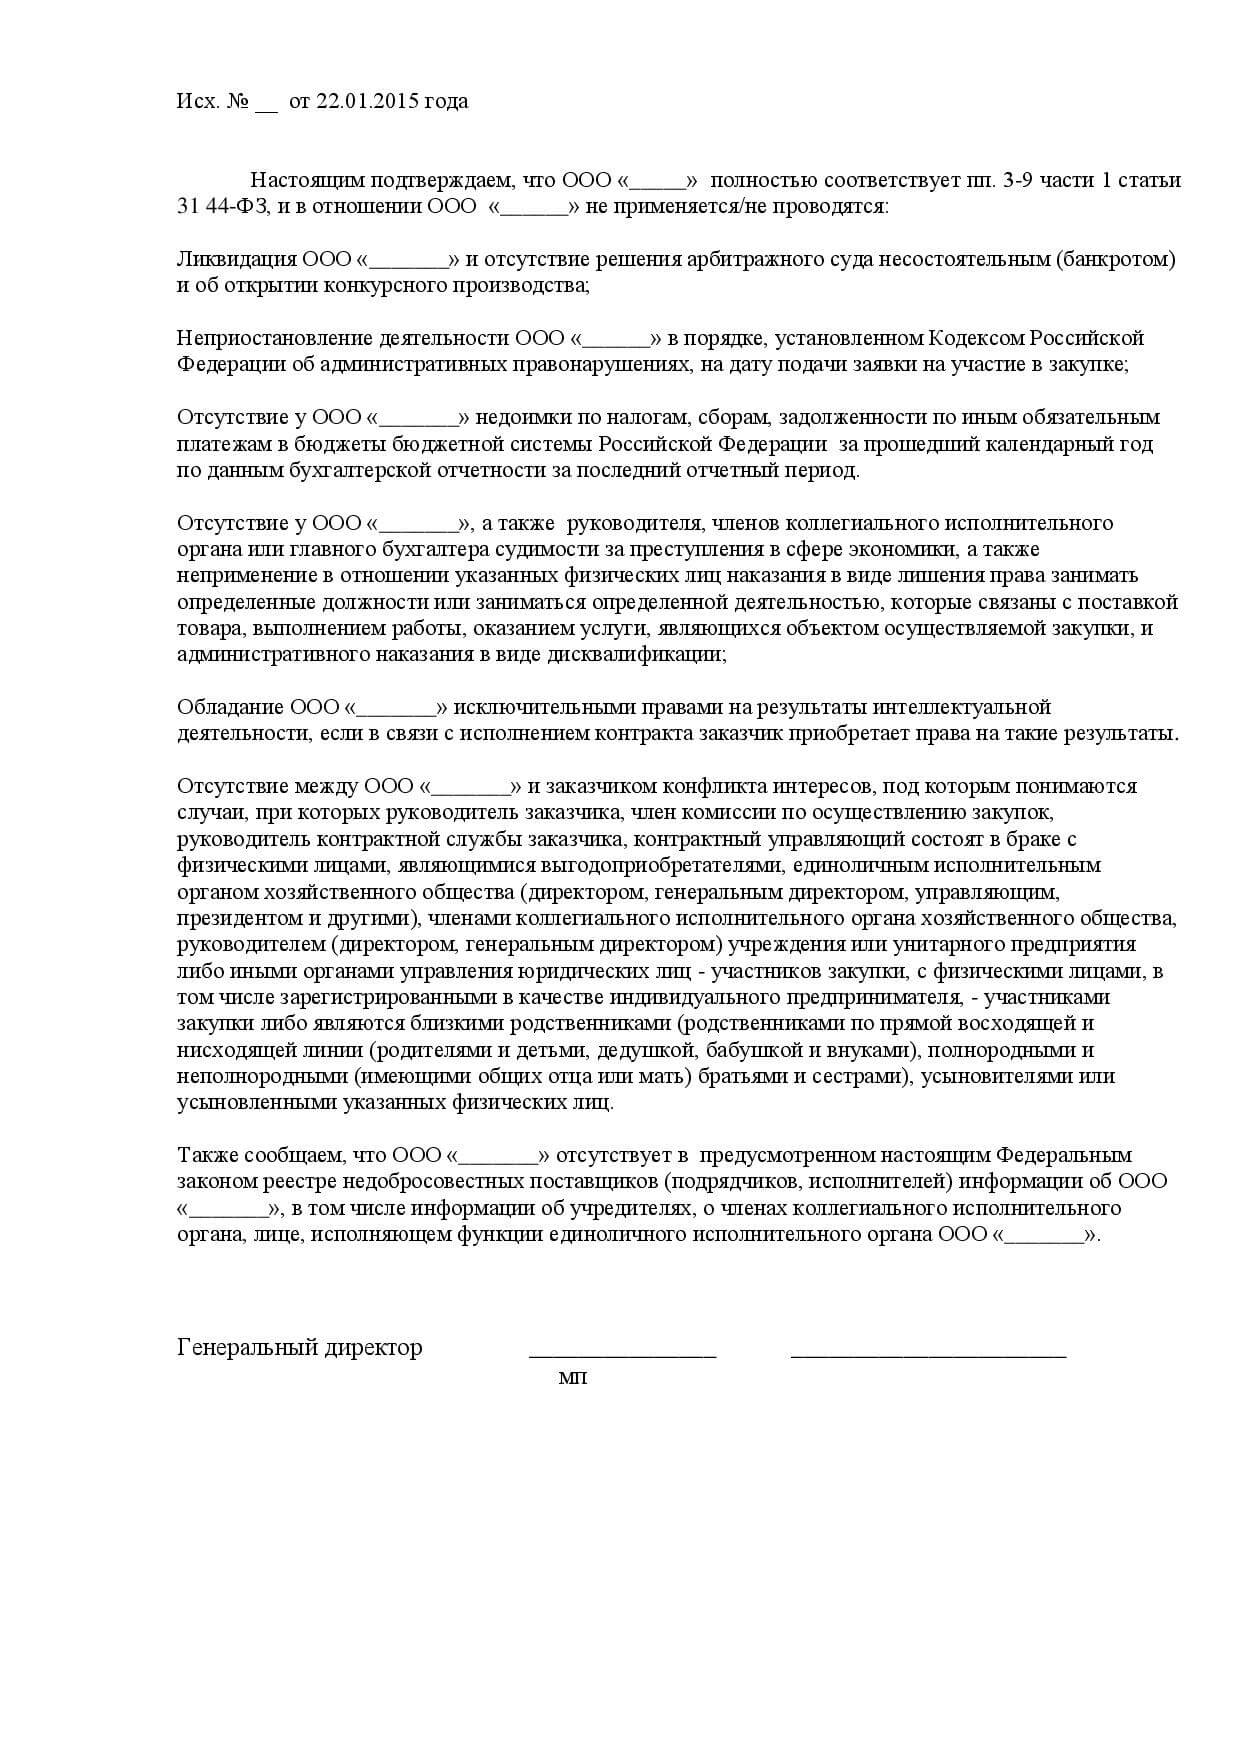 декларация соответствия участника требованиям фз 223 образец